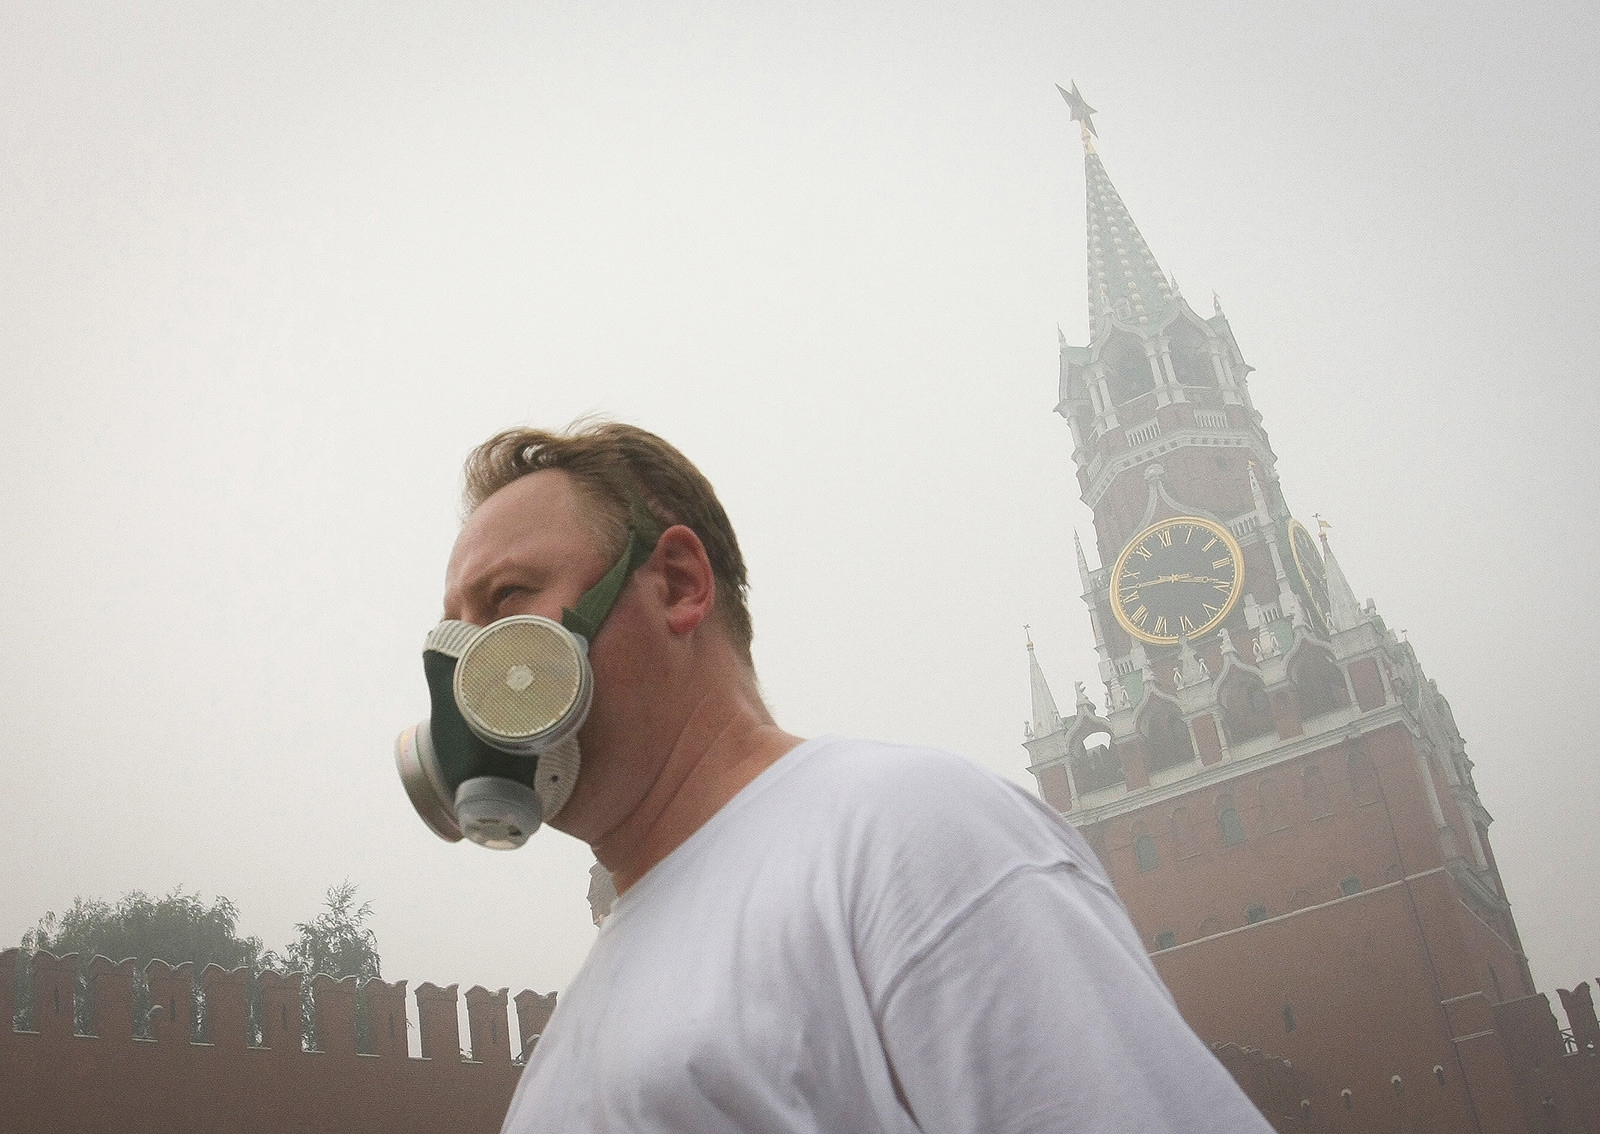 На оваа фотографија од 7 август 2010 година човек носи гасна маска за да се заштити од смогот во Москва предизвикан од шумските пожари. Смогот од околните шумски пожари кој ја покри Москва беше во одредена мера токсичен и го загрозуваше здравјето на жителите, така што многумина носеа маски.